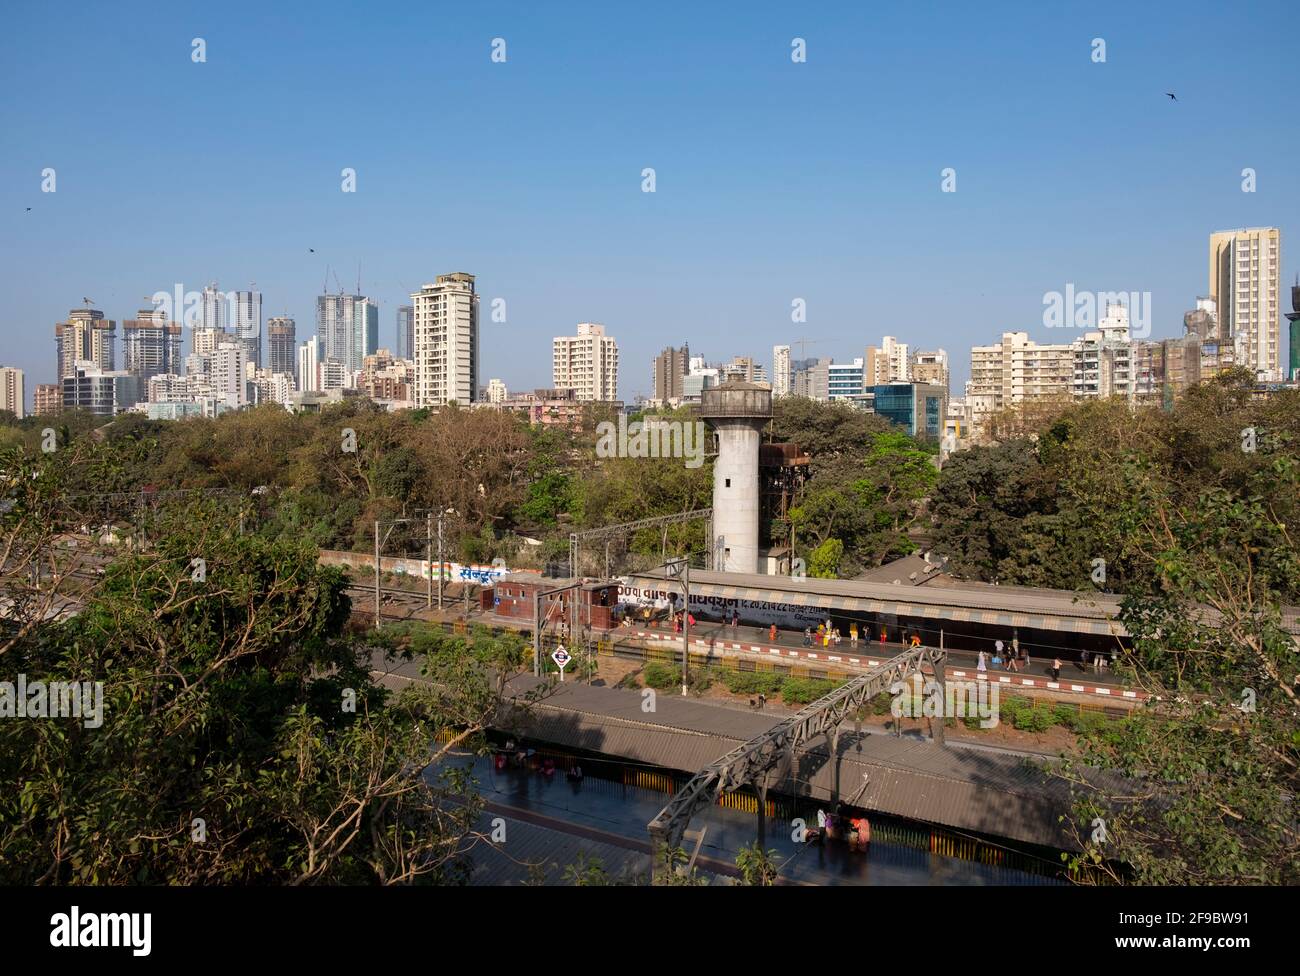 Erhöhter Blick auf den Bahnhof Dadar mit Skyline im Hintergrund, Mumbai, Maharashtra, Indien, Asien. Stockfoto